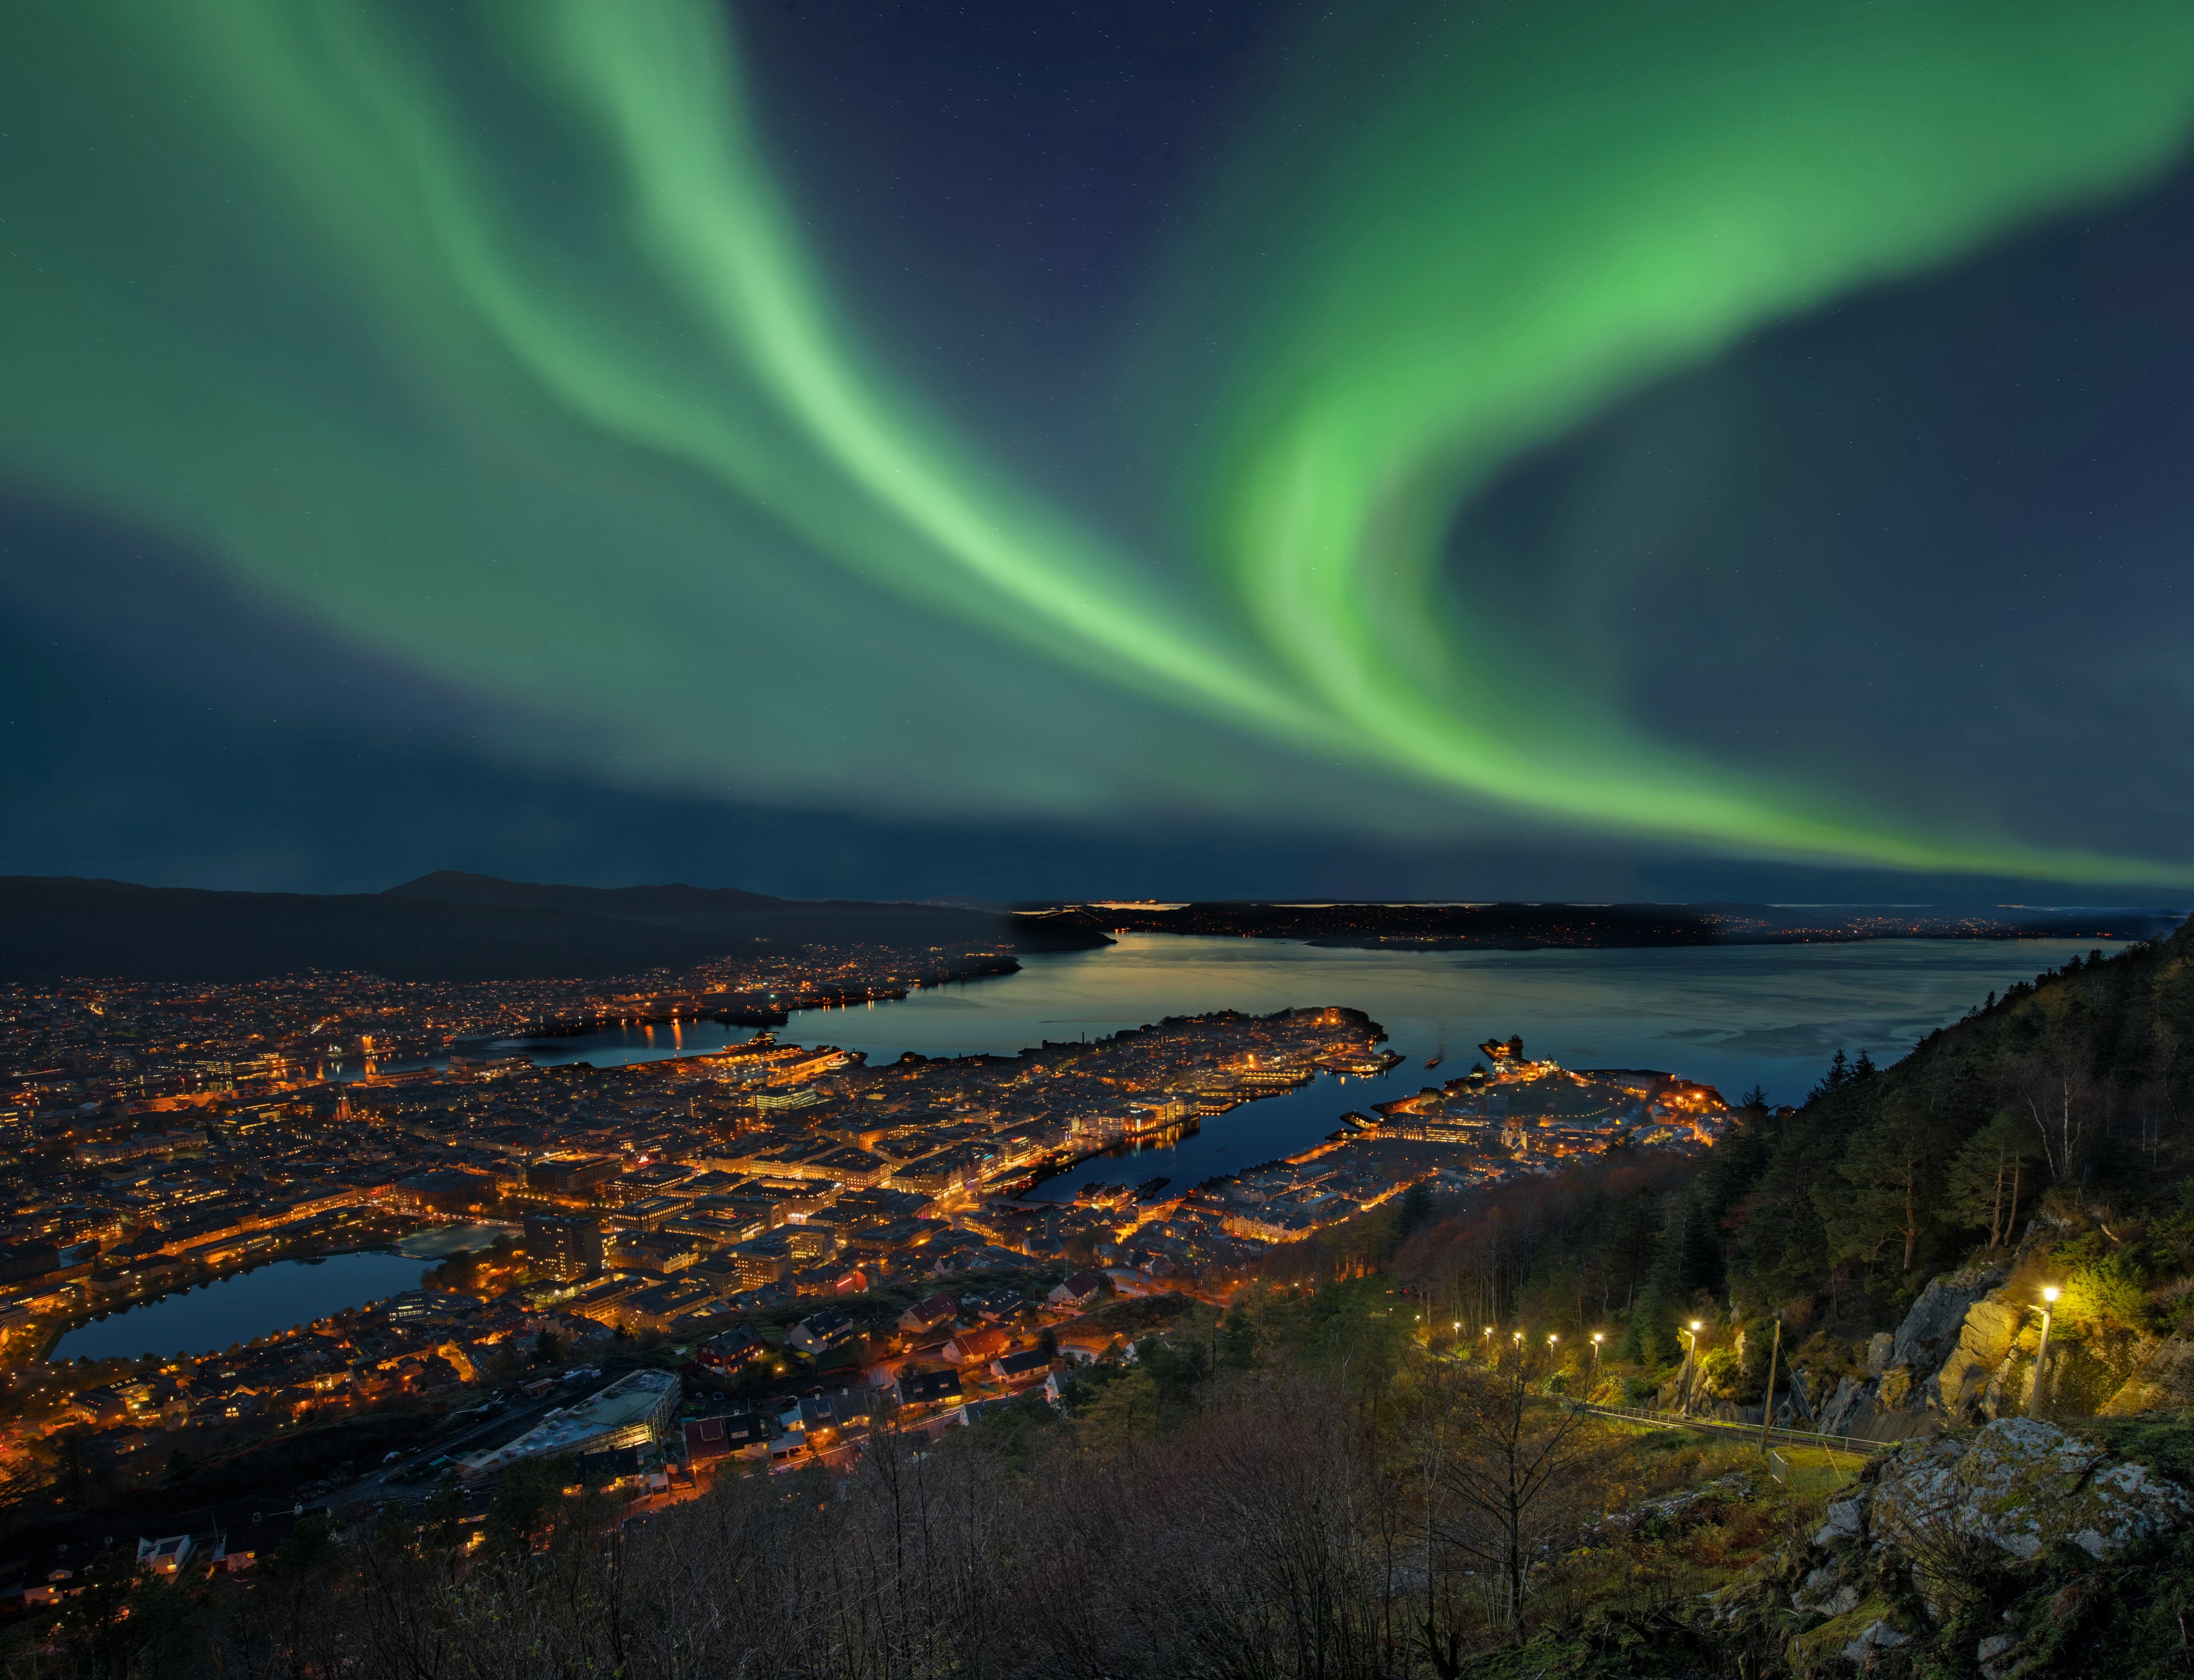 Northern lights - Aurora borealis over harbor of Bergen City, Norway